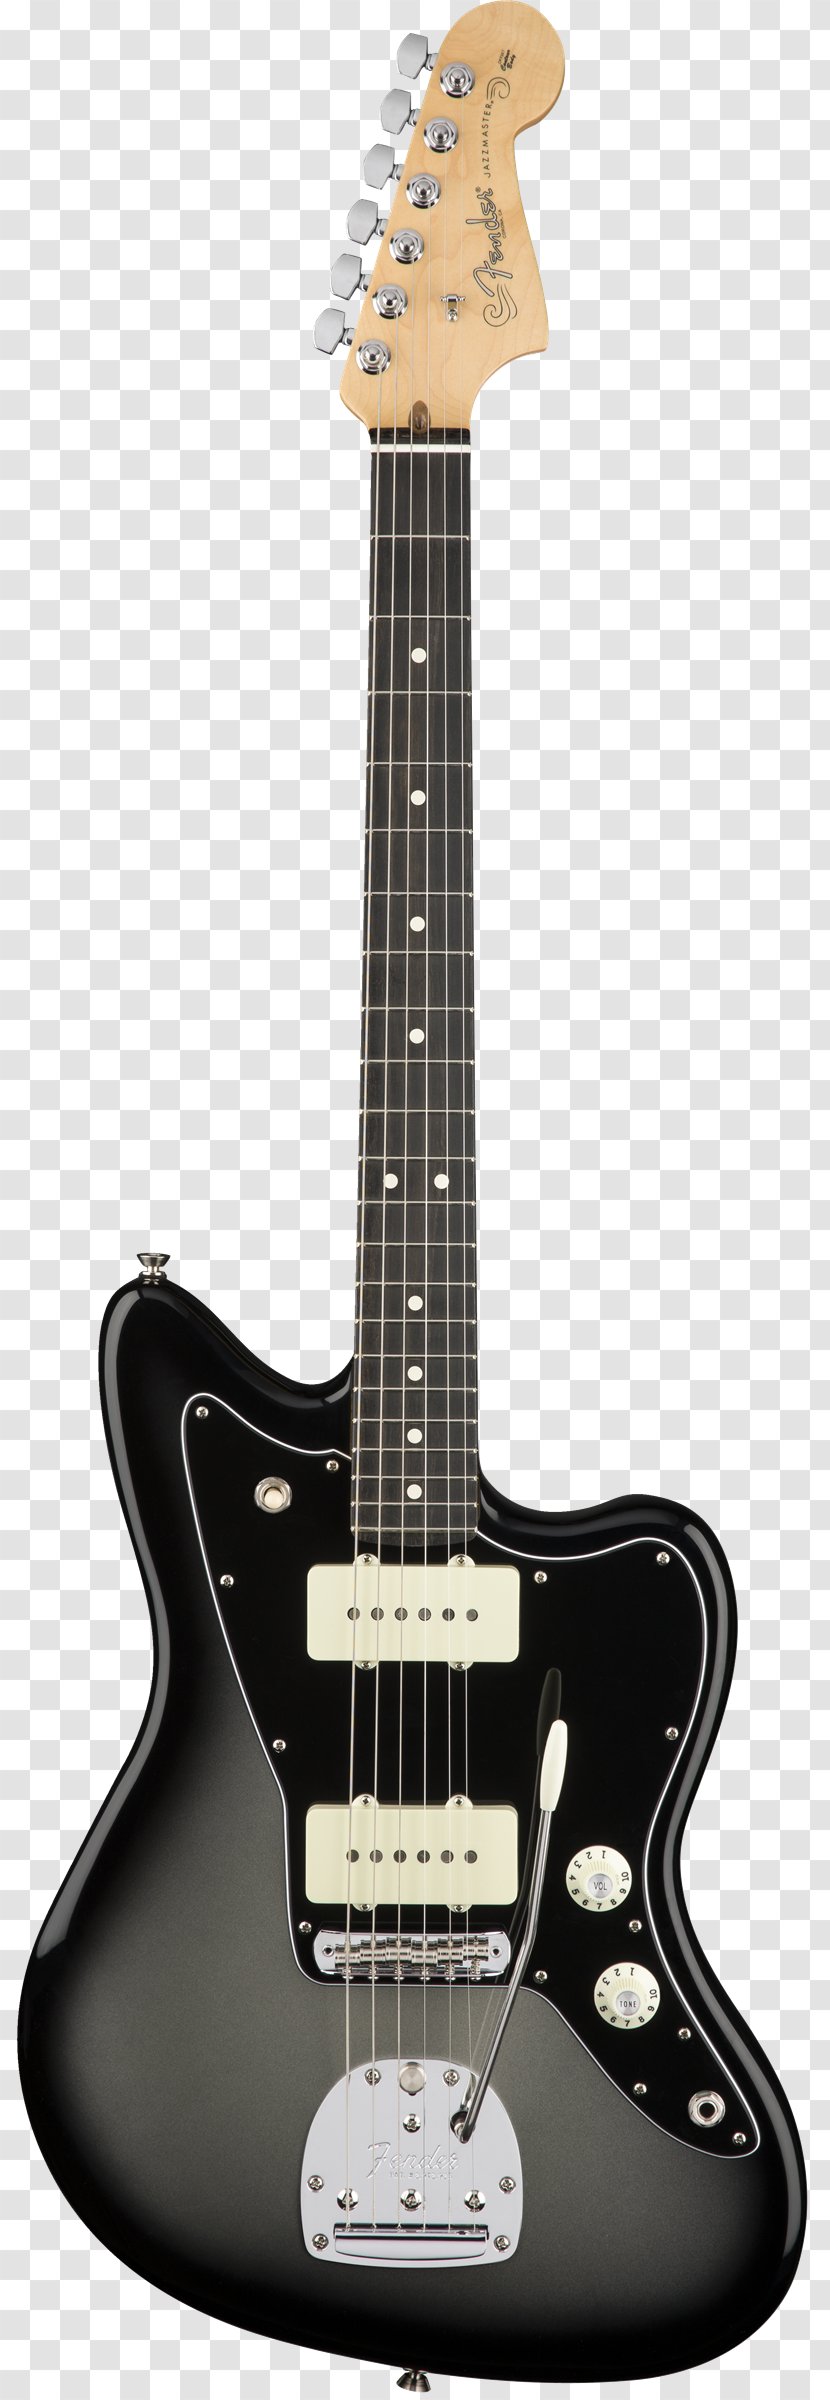 Fender Jazzmaster Stratocaster American Professional Guitar Sunburst Transparent PNG